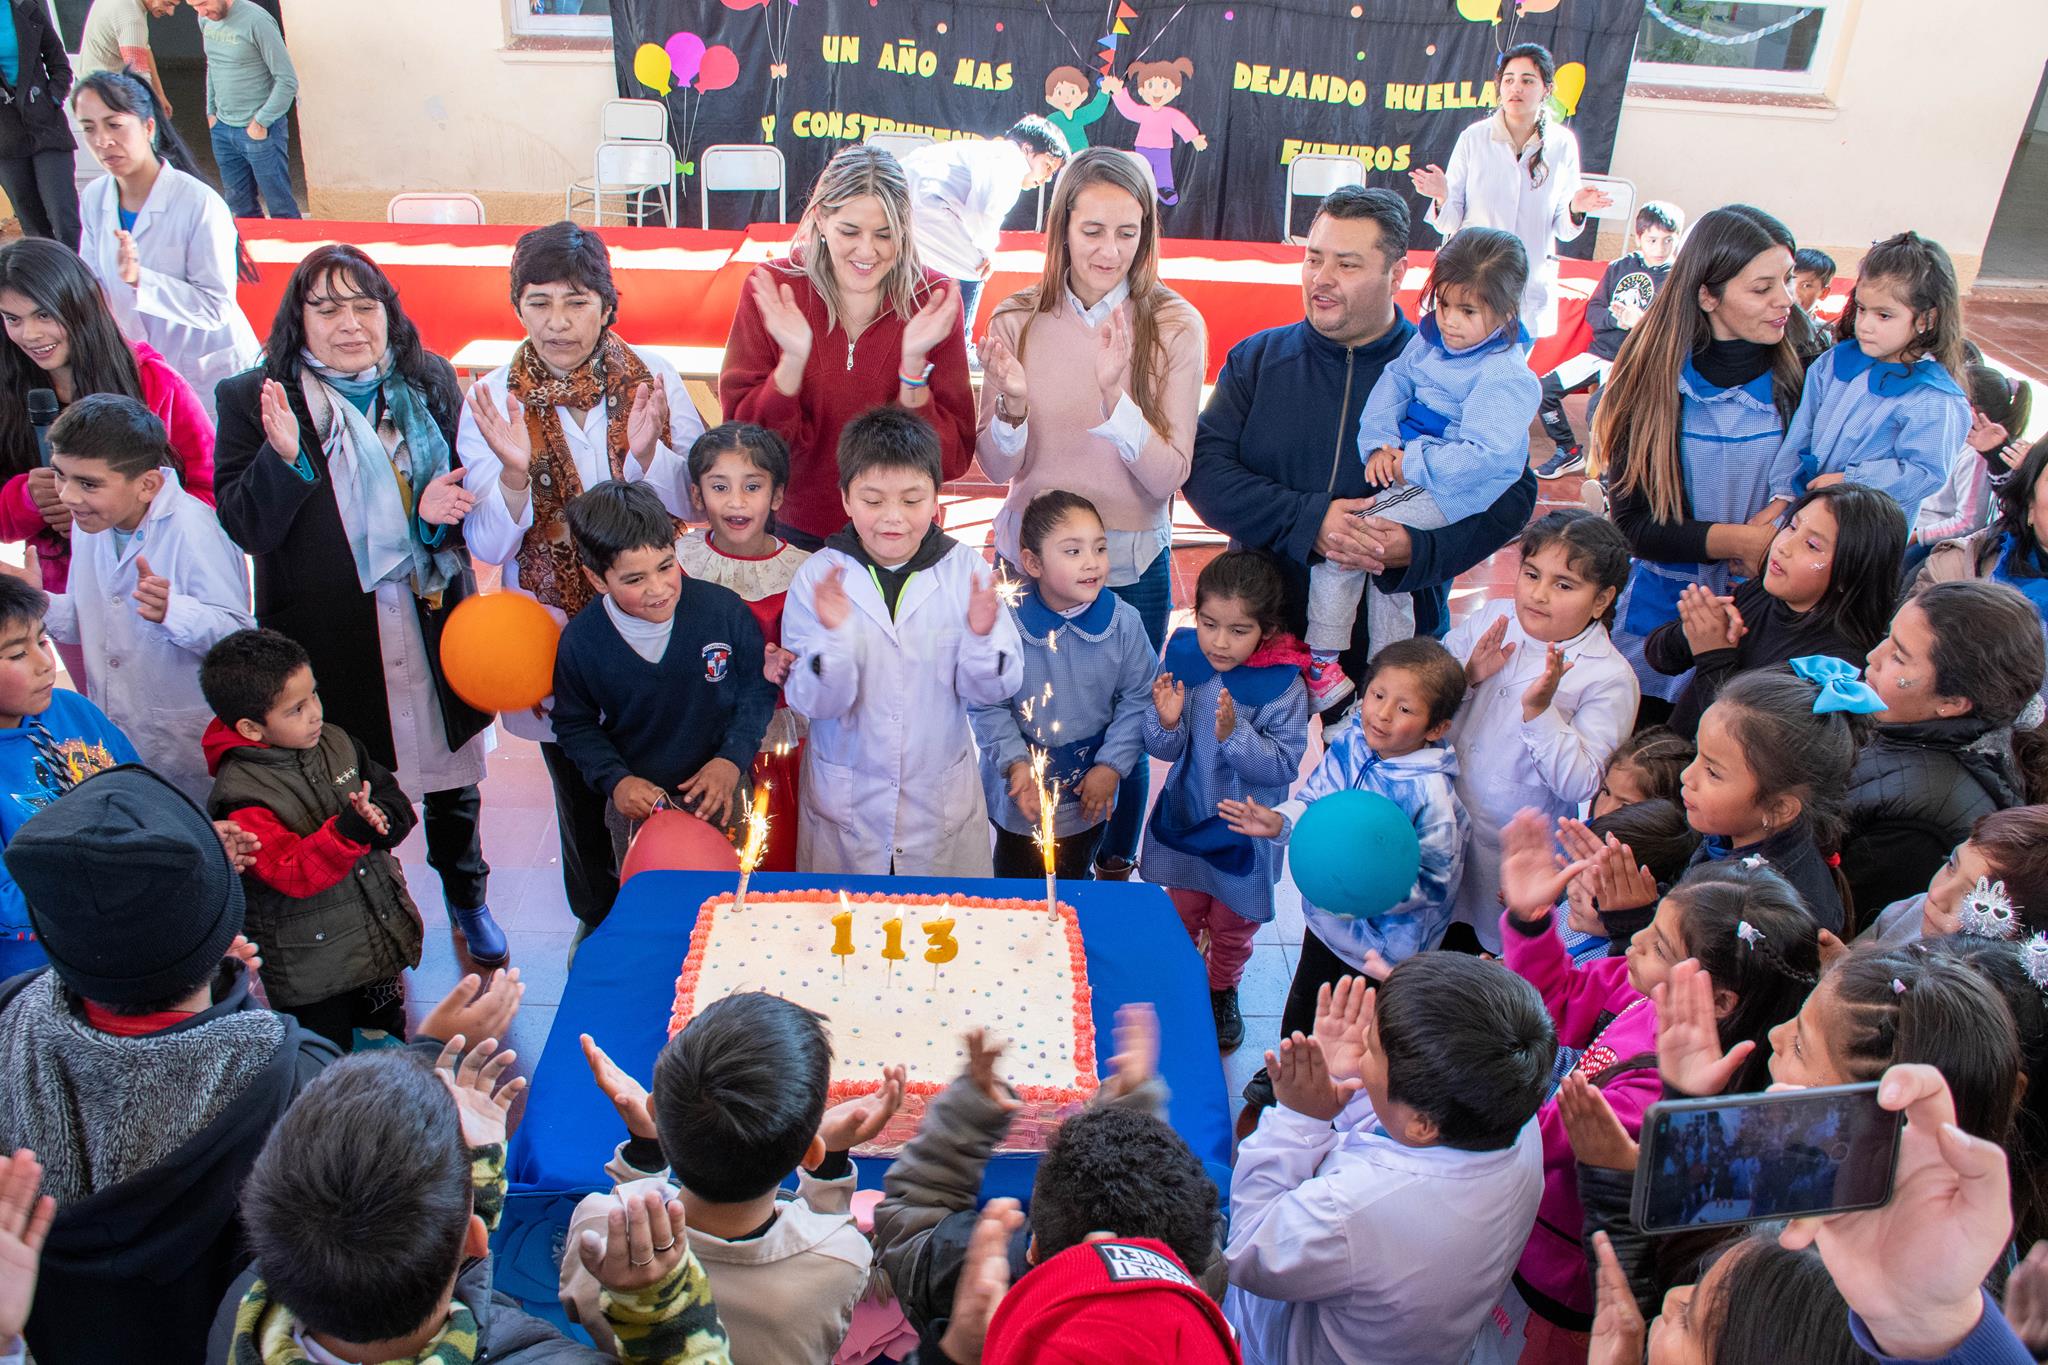 La Escuela N288 de Hualfín celebró 113º años de vida institucional junto a la ministra de Educación1